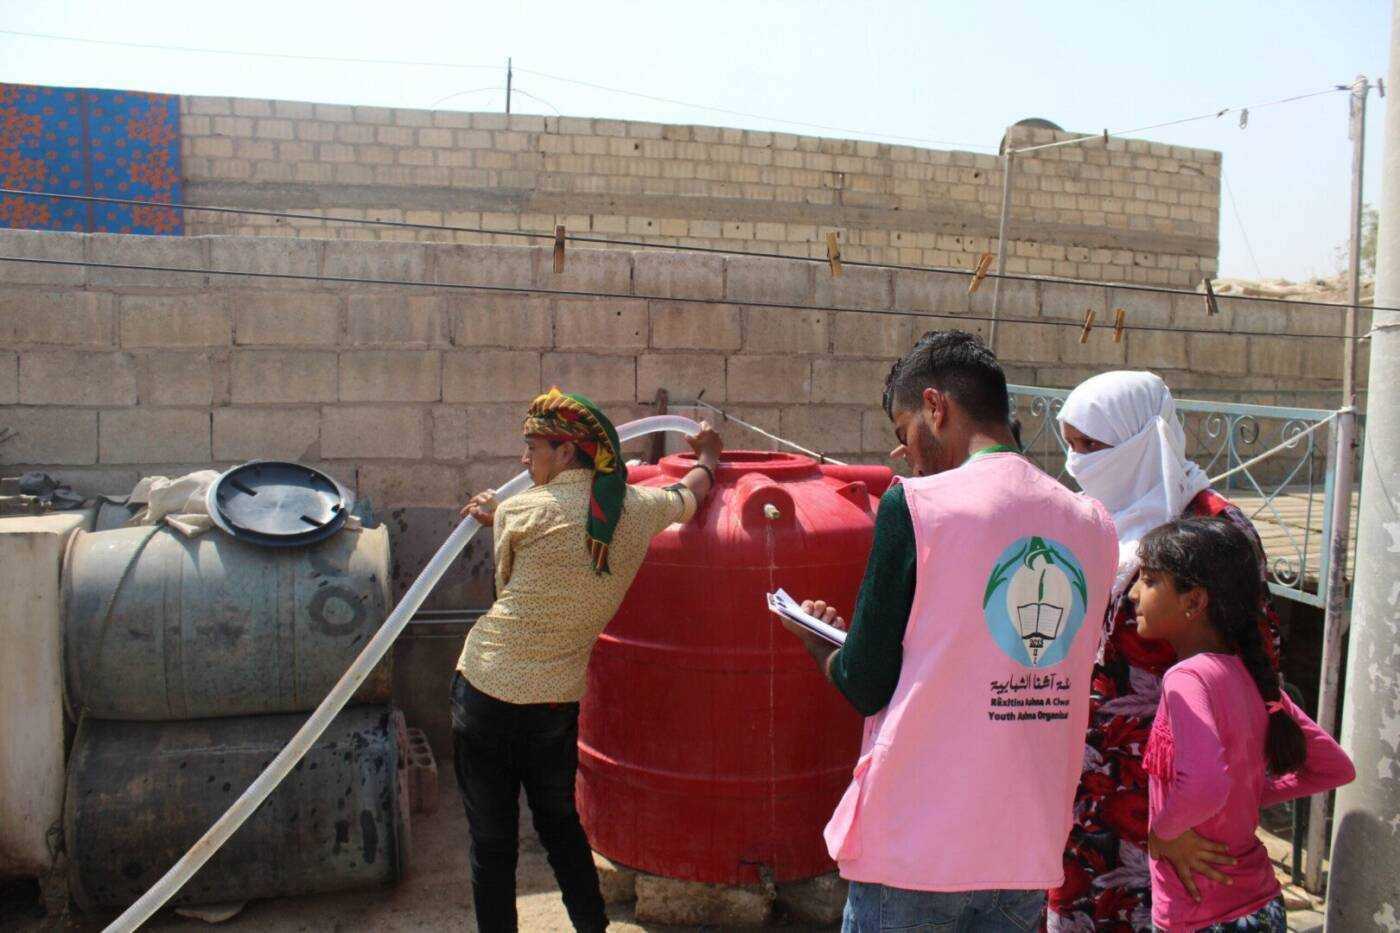 موظف من منظمة آشنا للتنمية يدون معلومات أثناء تعبئة خزان مياه لعائلة في مدينة الحسكة، 06/ 09/ 2020، (آشنا للتنمية/ سوريا على طول)